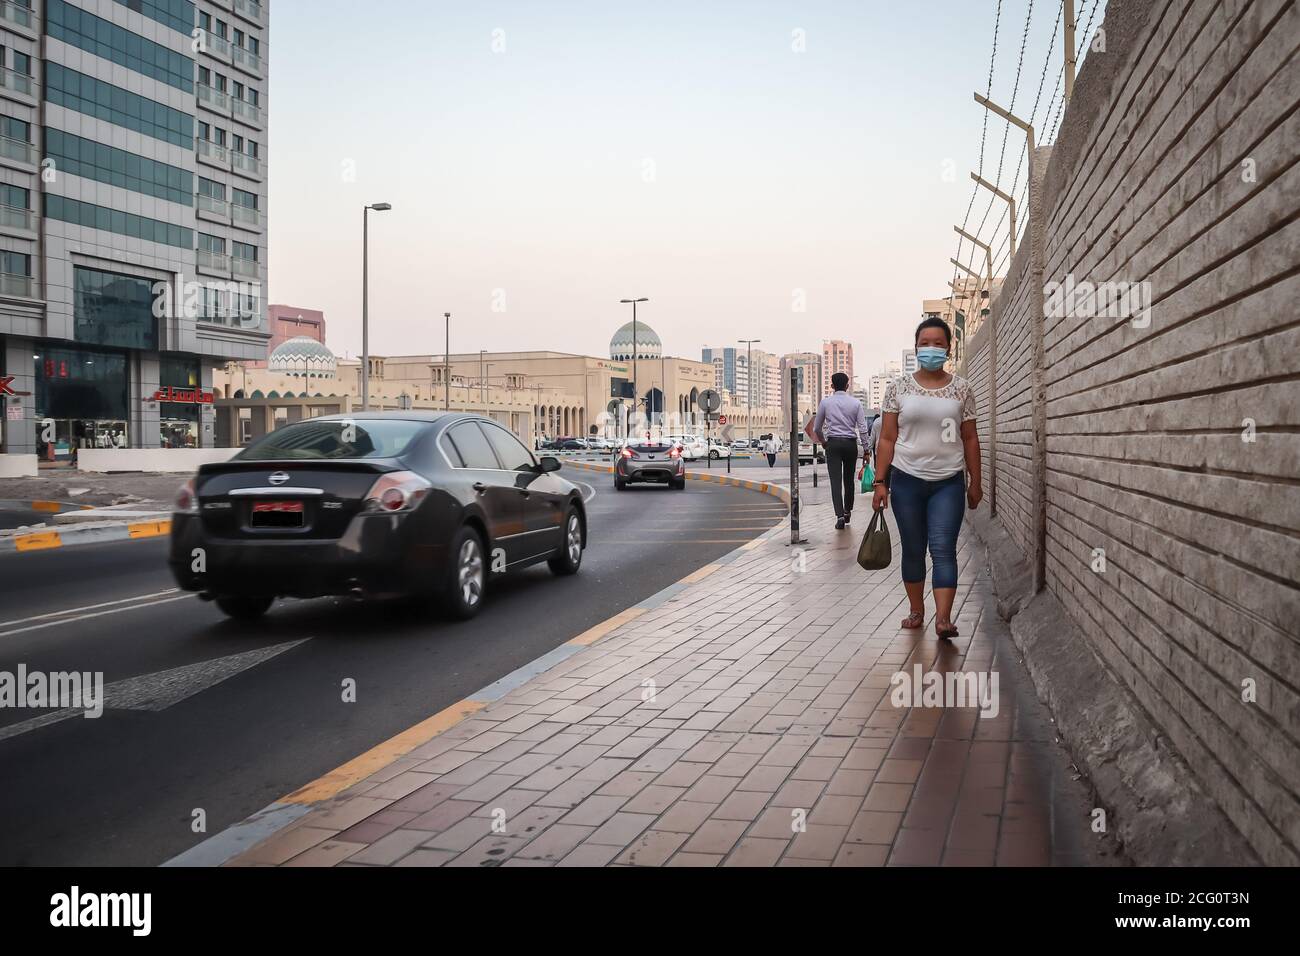 8-09-2020. Vereinigte Arabische Emirate, Abu Dhabi City Street während des Ausbruchs des Coronavirus. Emarati Menschen Lebensstil und Stadt Hintergrund, Selektive fo Stockfoto